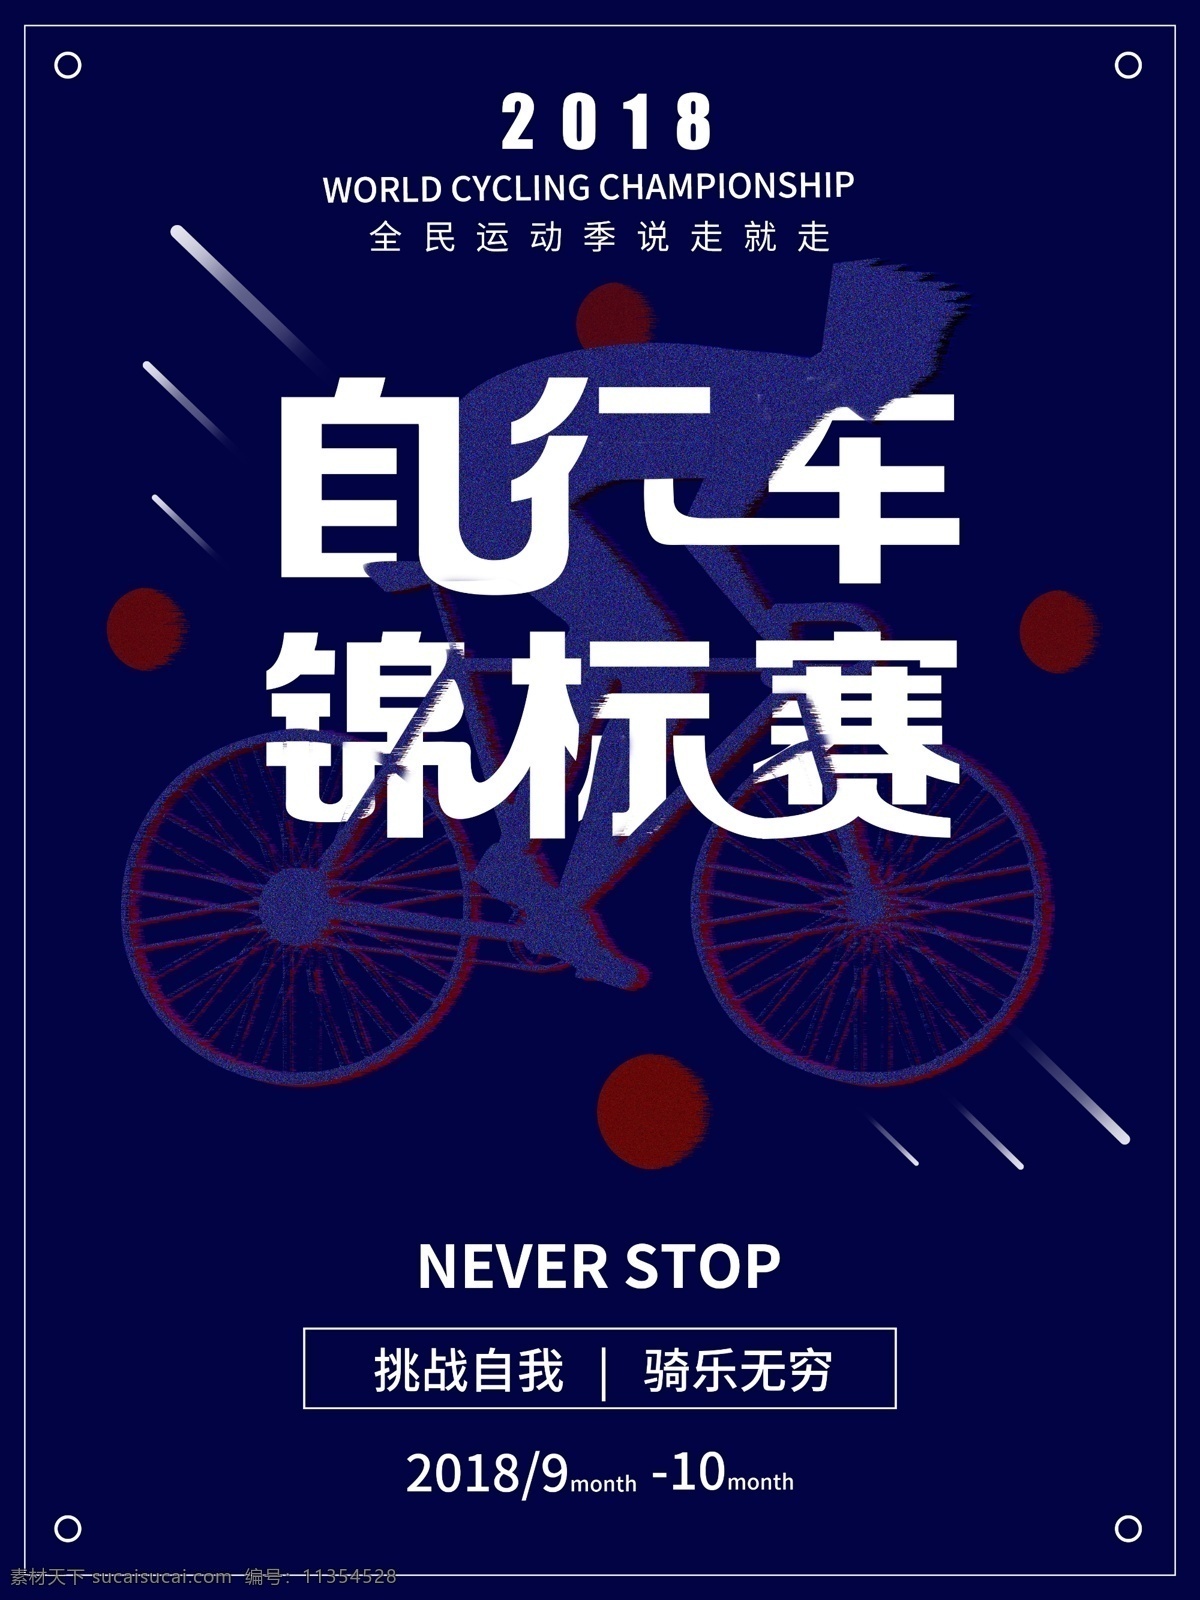 平面 世界 自行车 锦标赛 创意 几何 宣传海报 自行车锦标赛 海报 推广 公益 户外广告